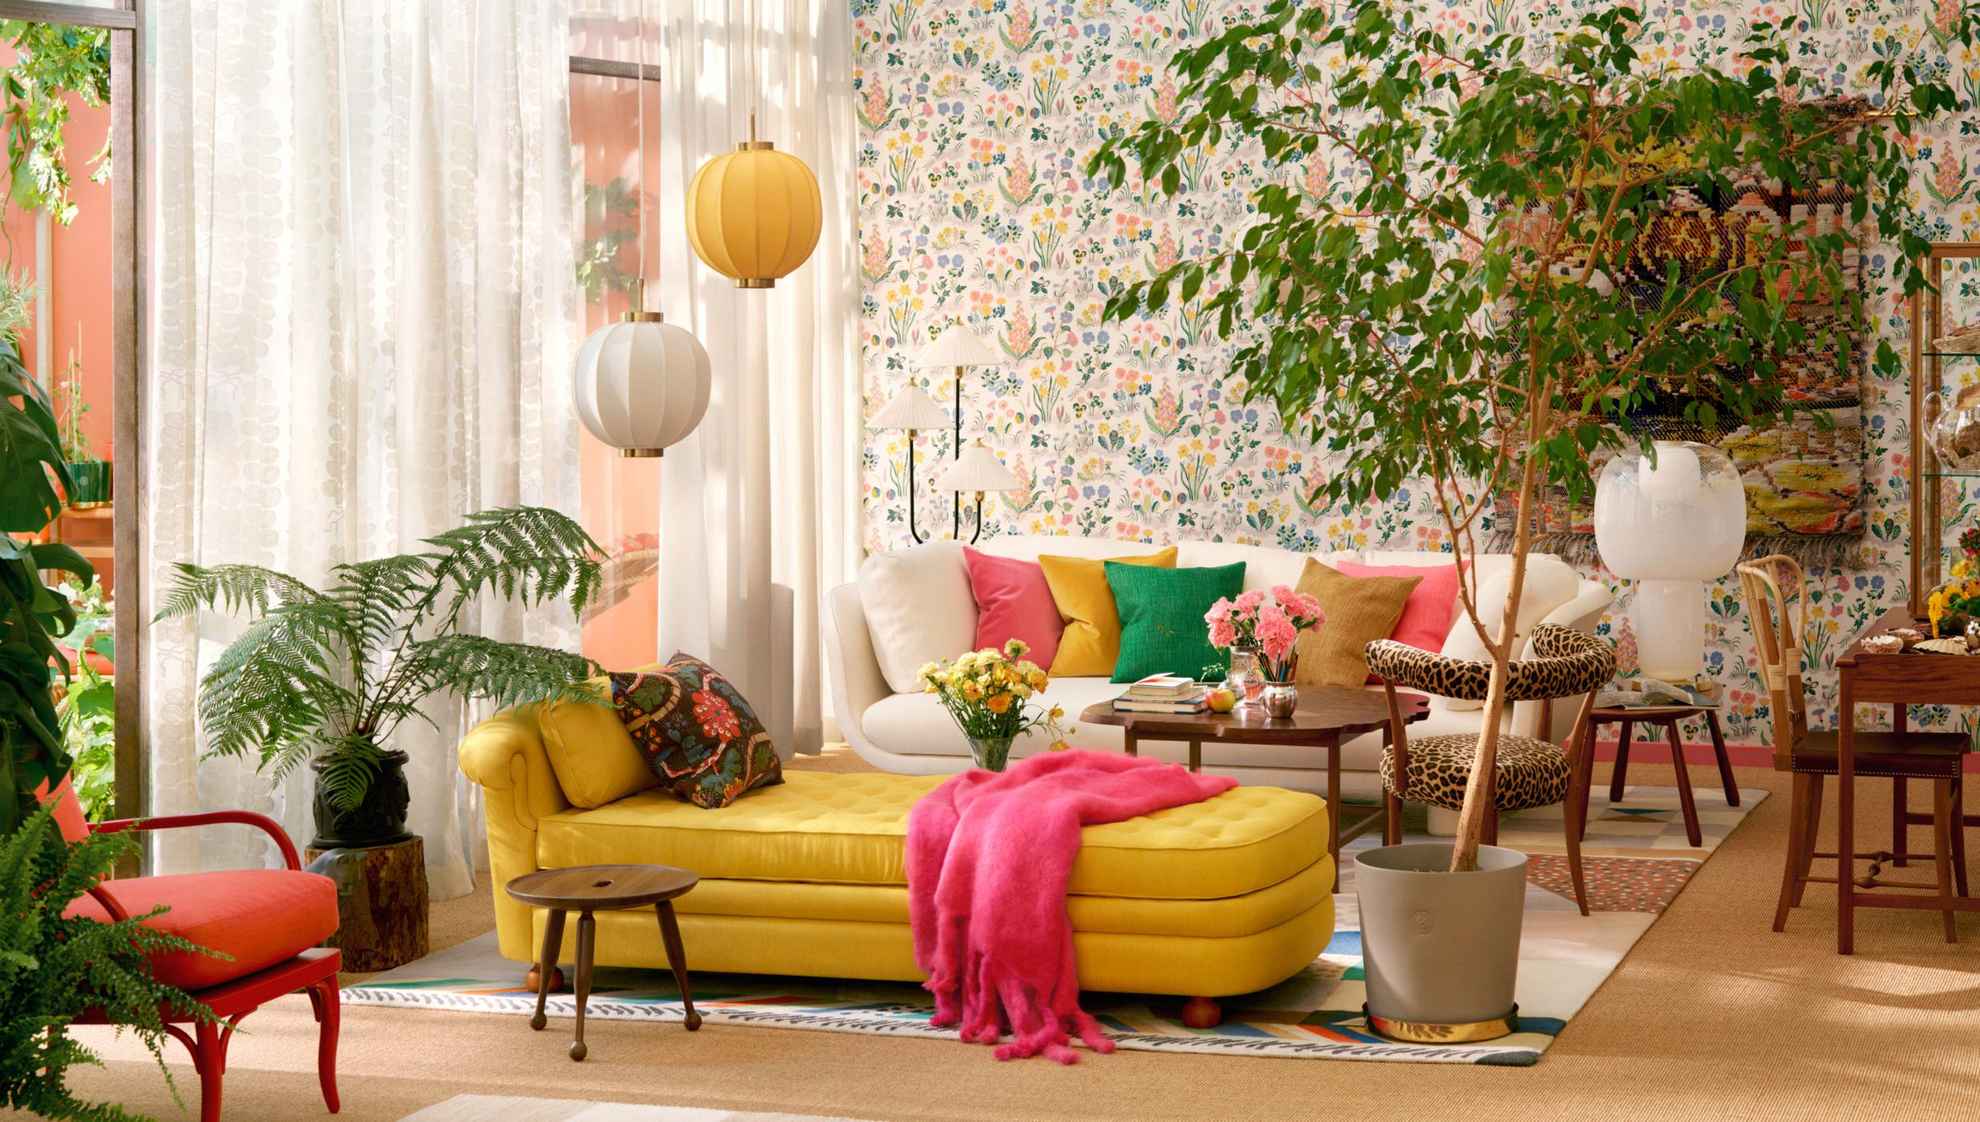 Un salon avec un canapé beige avec des coussins colorés à l'arrière et une chaise longue jaune au centre de la pièce. À droite de la chaise longue se trouve une grande plante verte au sol. Les rideaux blancs transparents laissent entrer la lumière naturelle.